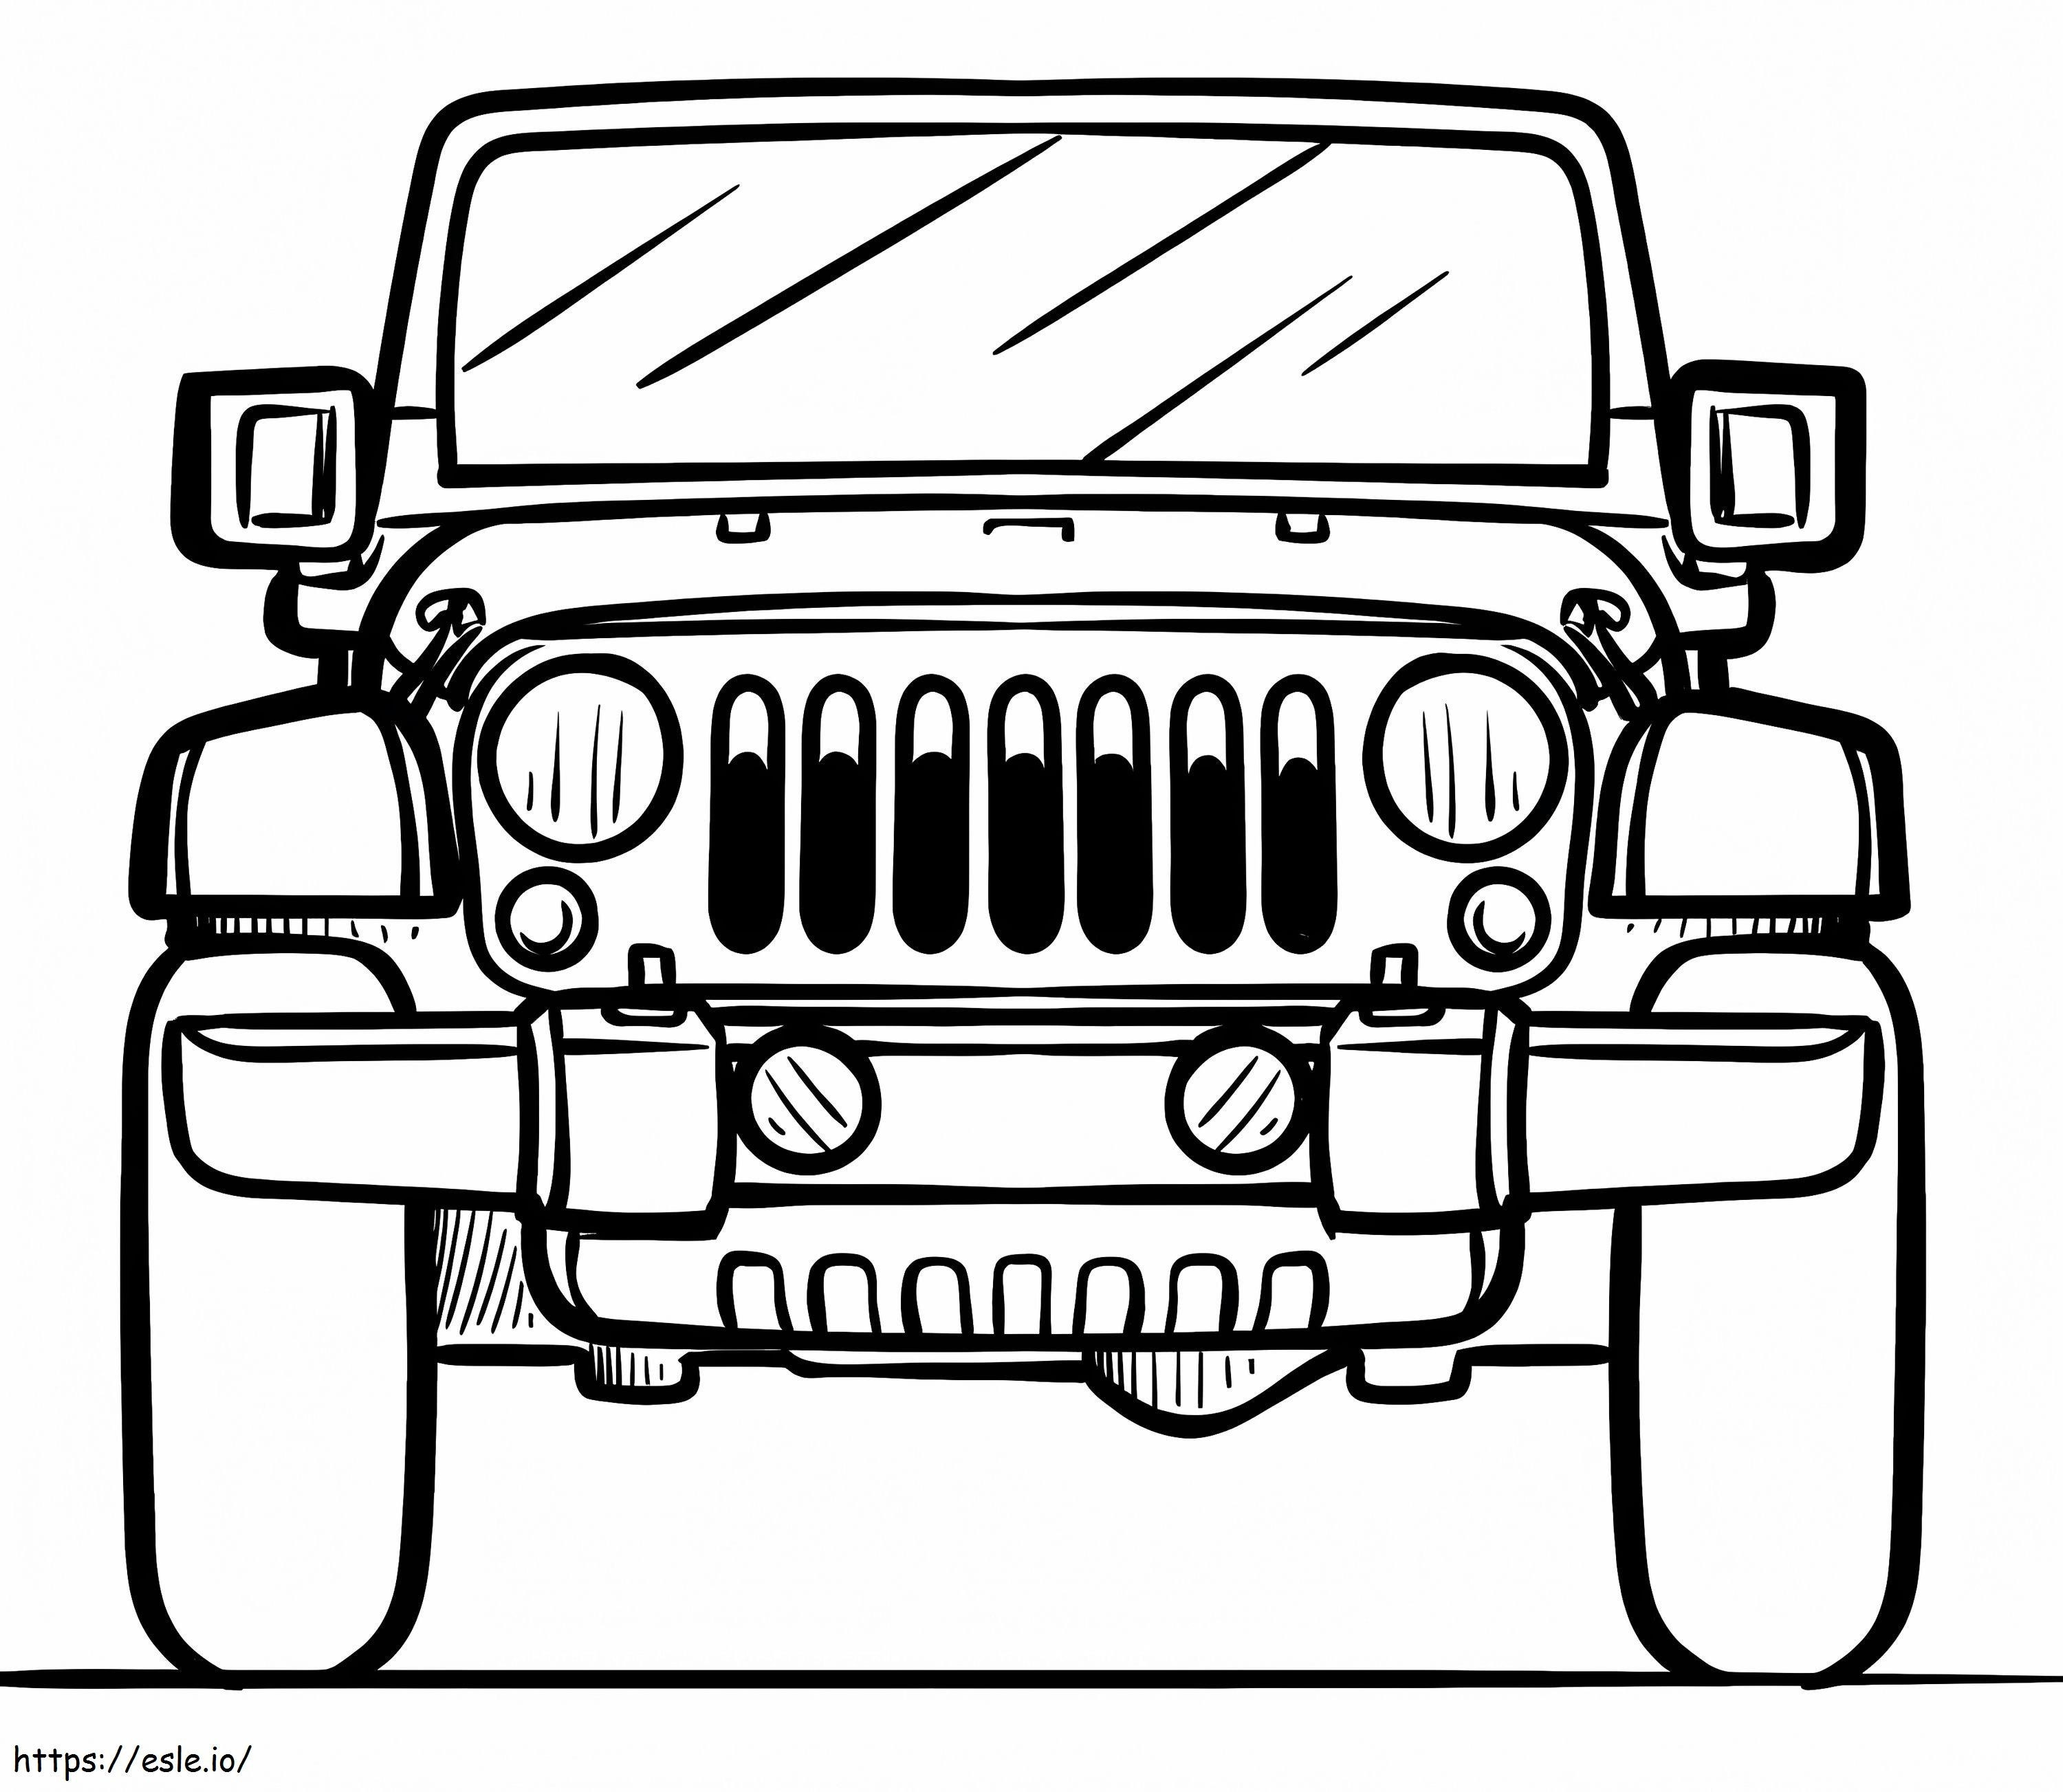 Jeep gratis para colorear